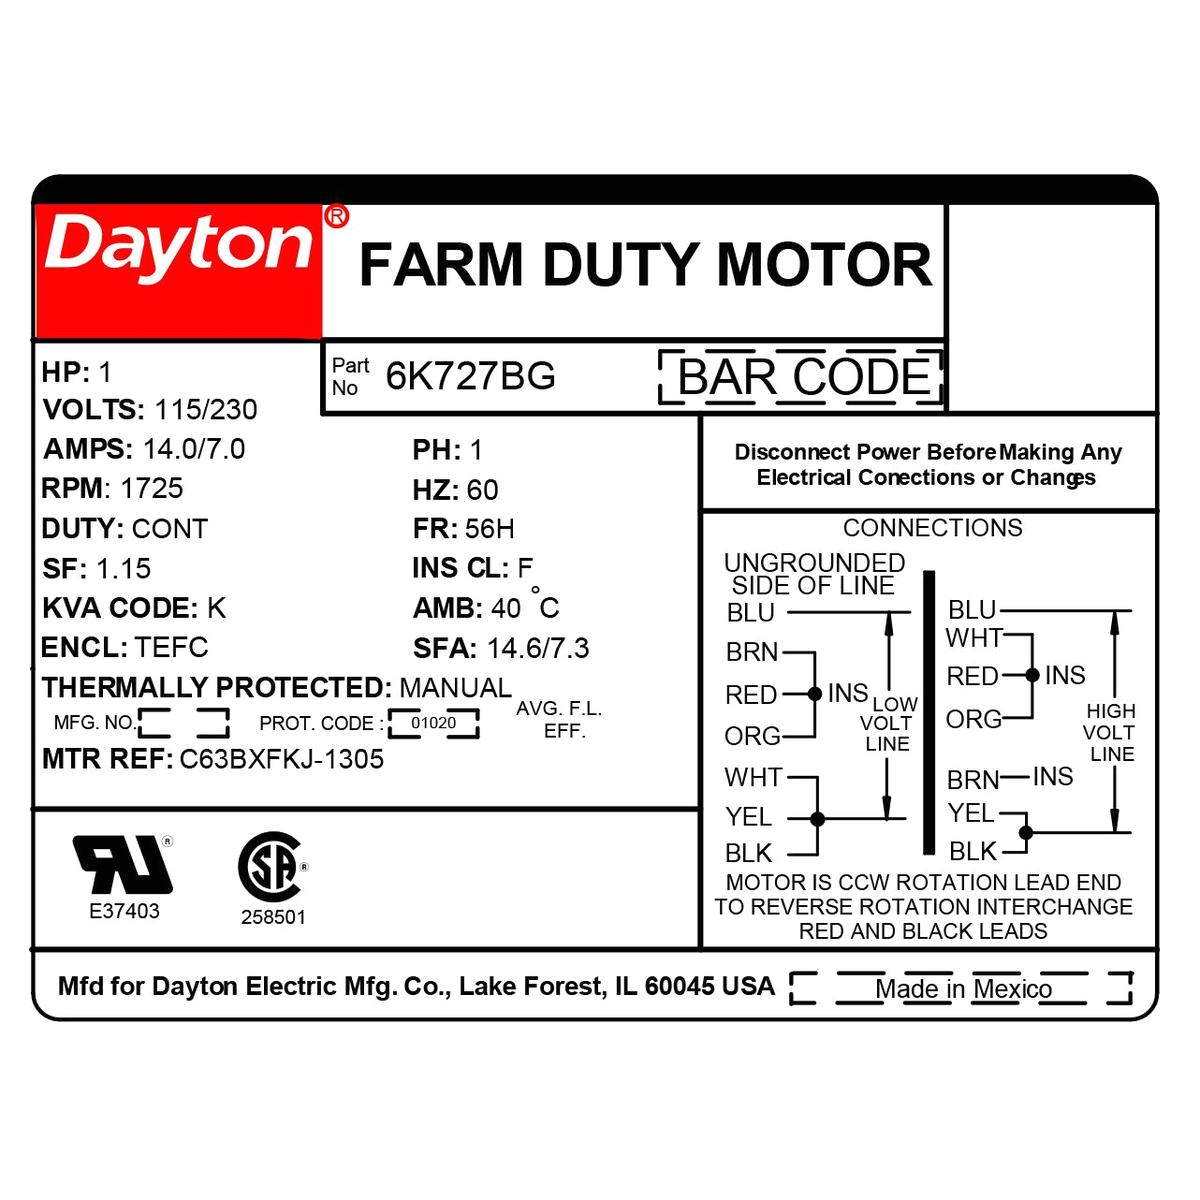 Dayton Farm Duty Motor Wiring Diagram High torque Farm Duty Motor Single Phase Tefc Gamut